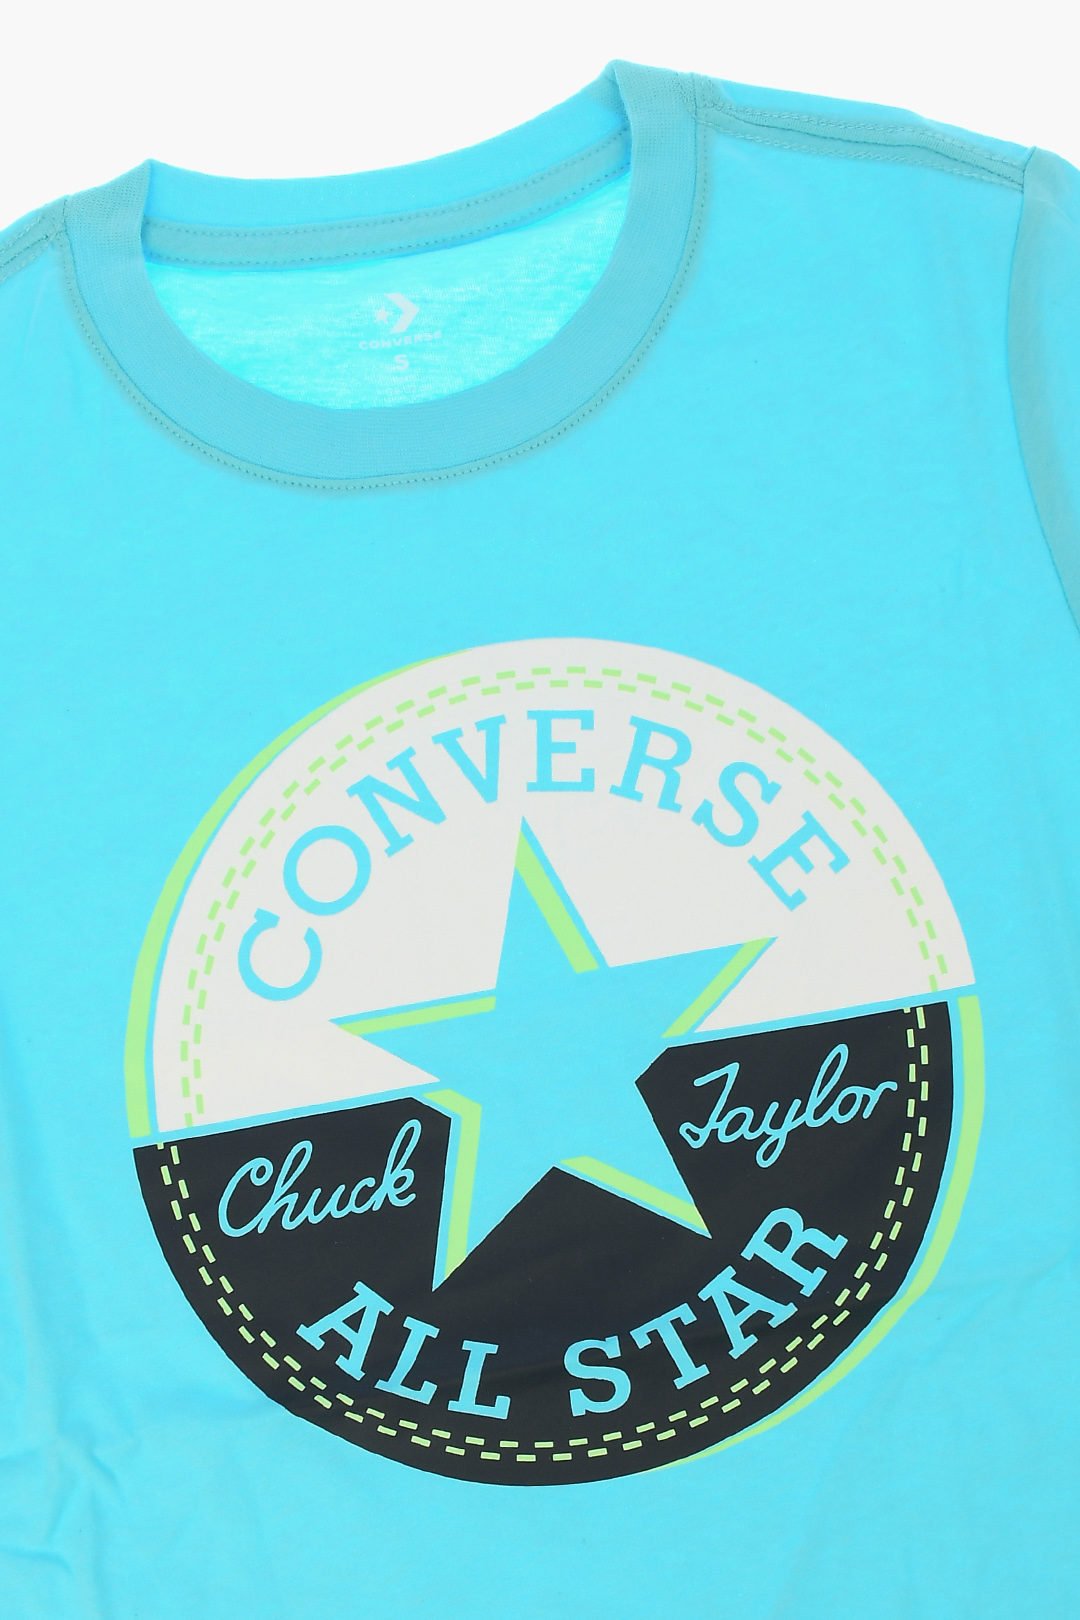 converse sleeveless t shirt